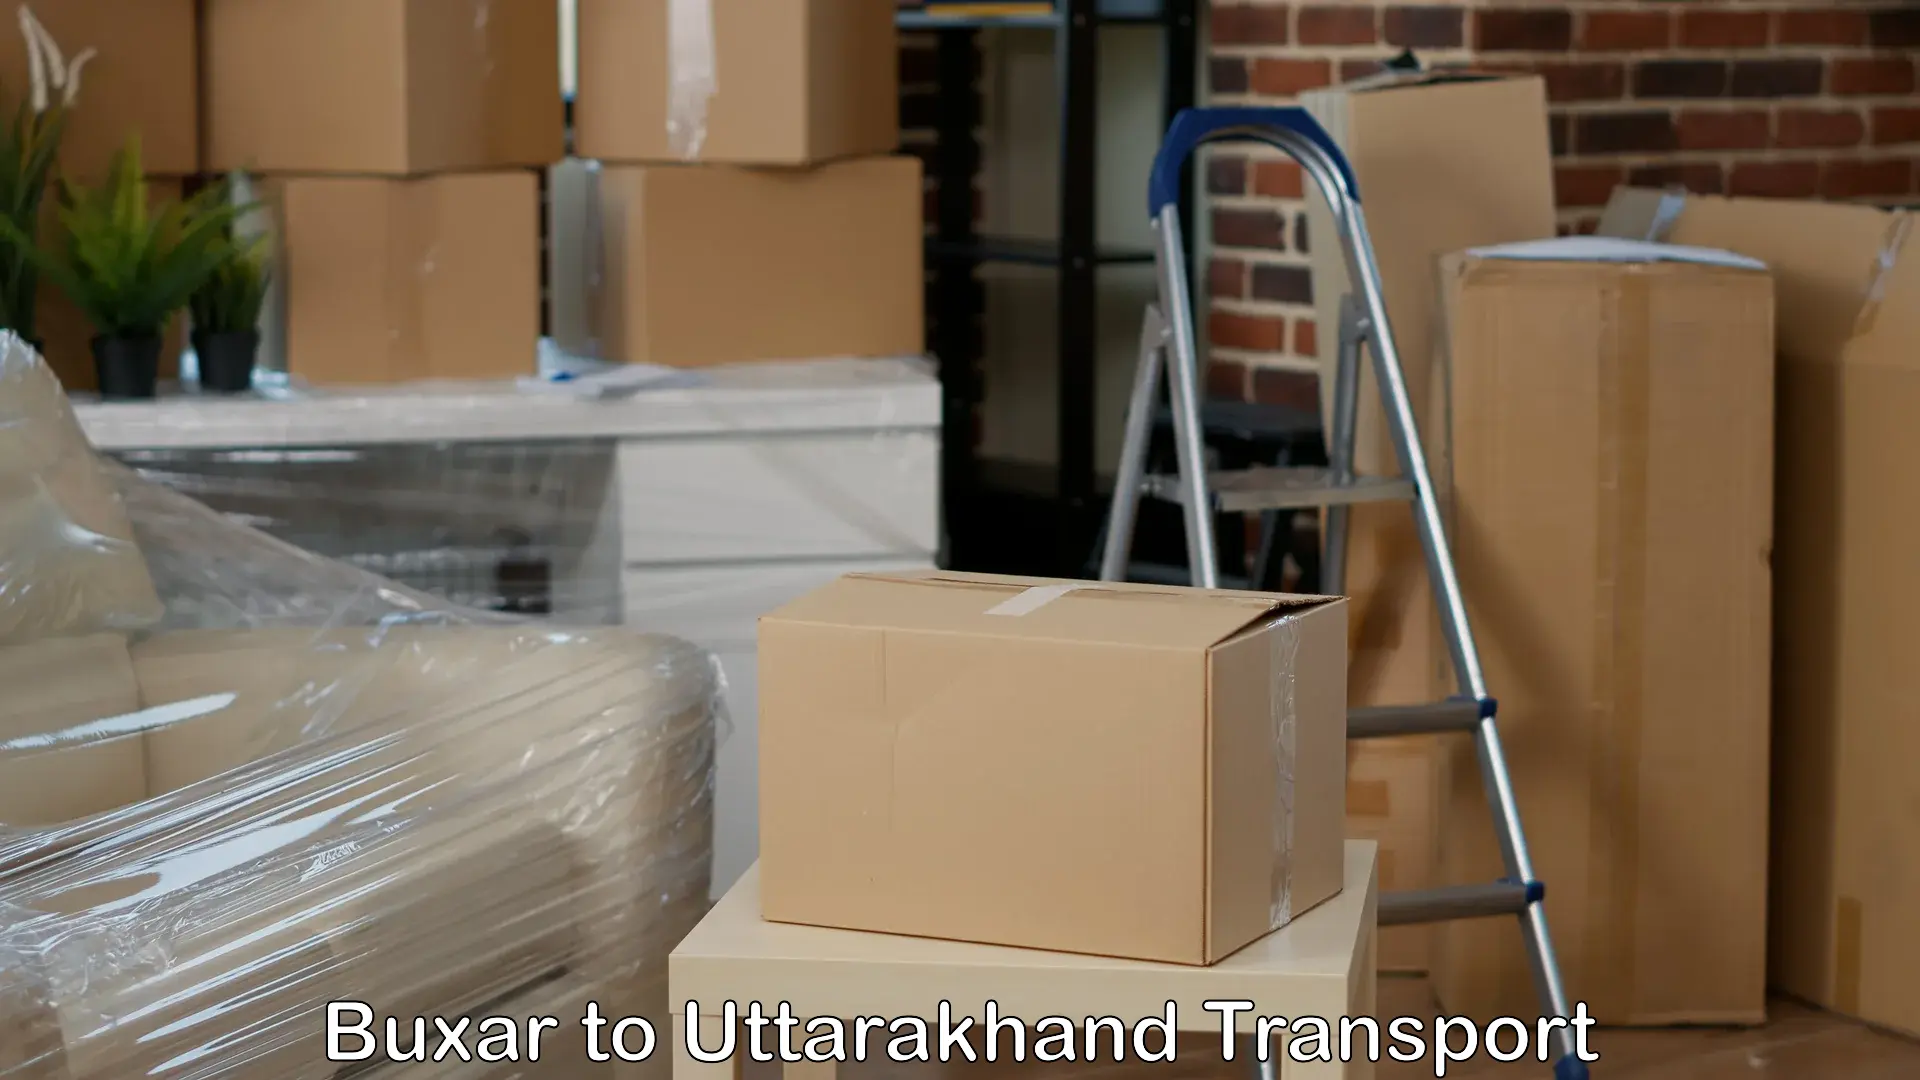 Commercial transport service in Buxar to Uttarakhand